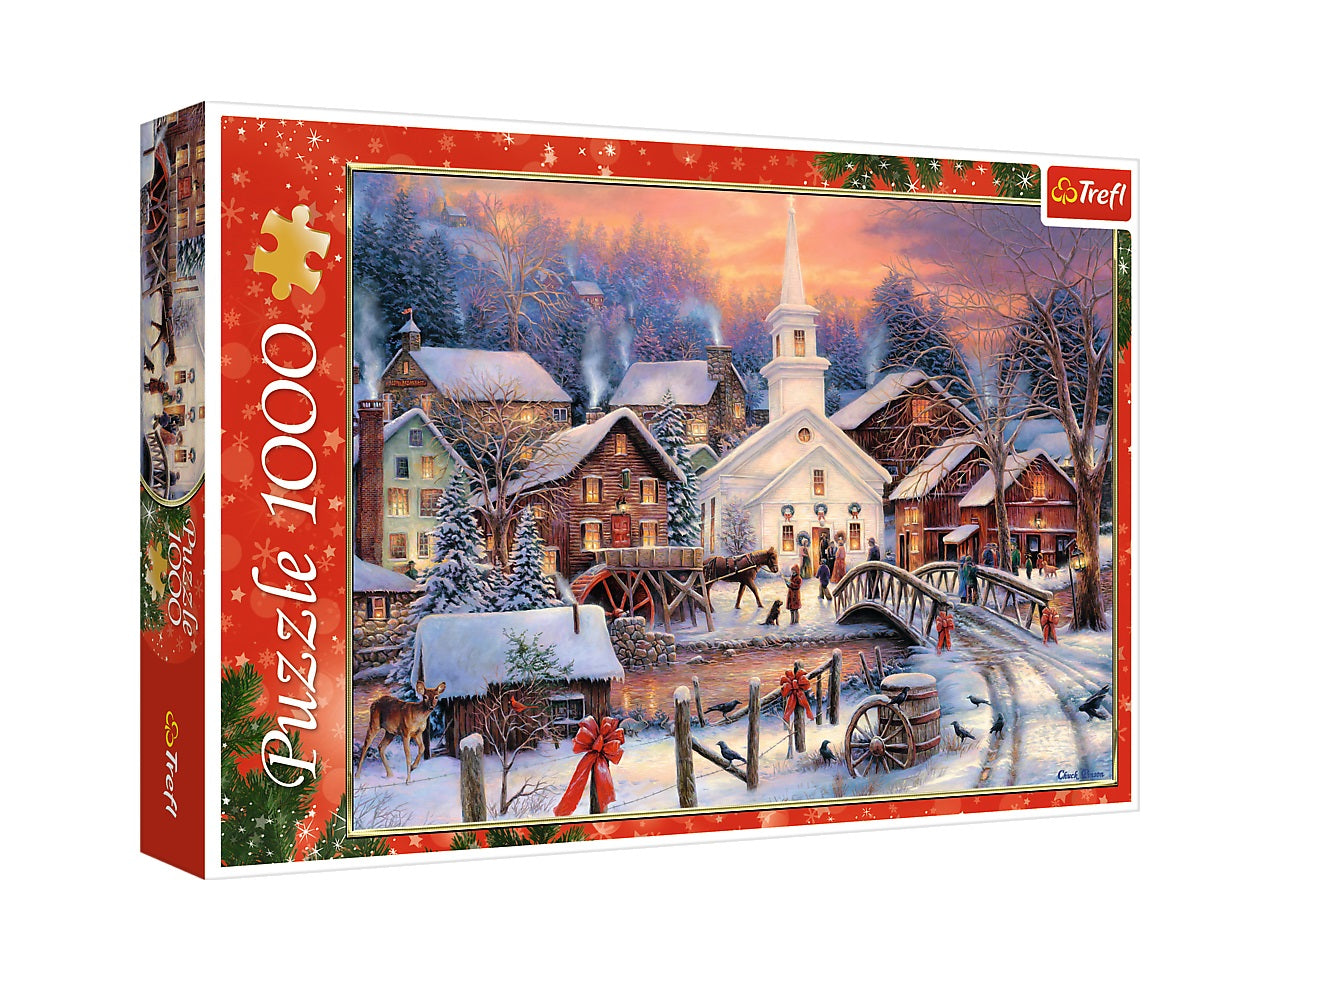 Trefl White Christmas 1000 piece jigsaw puzzle